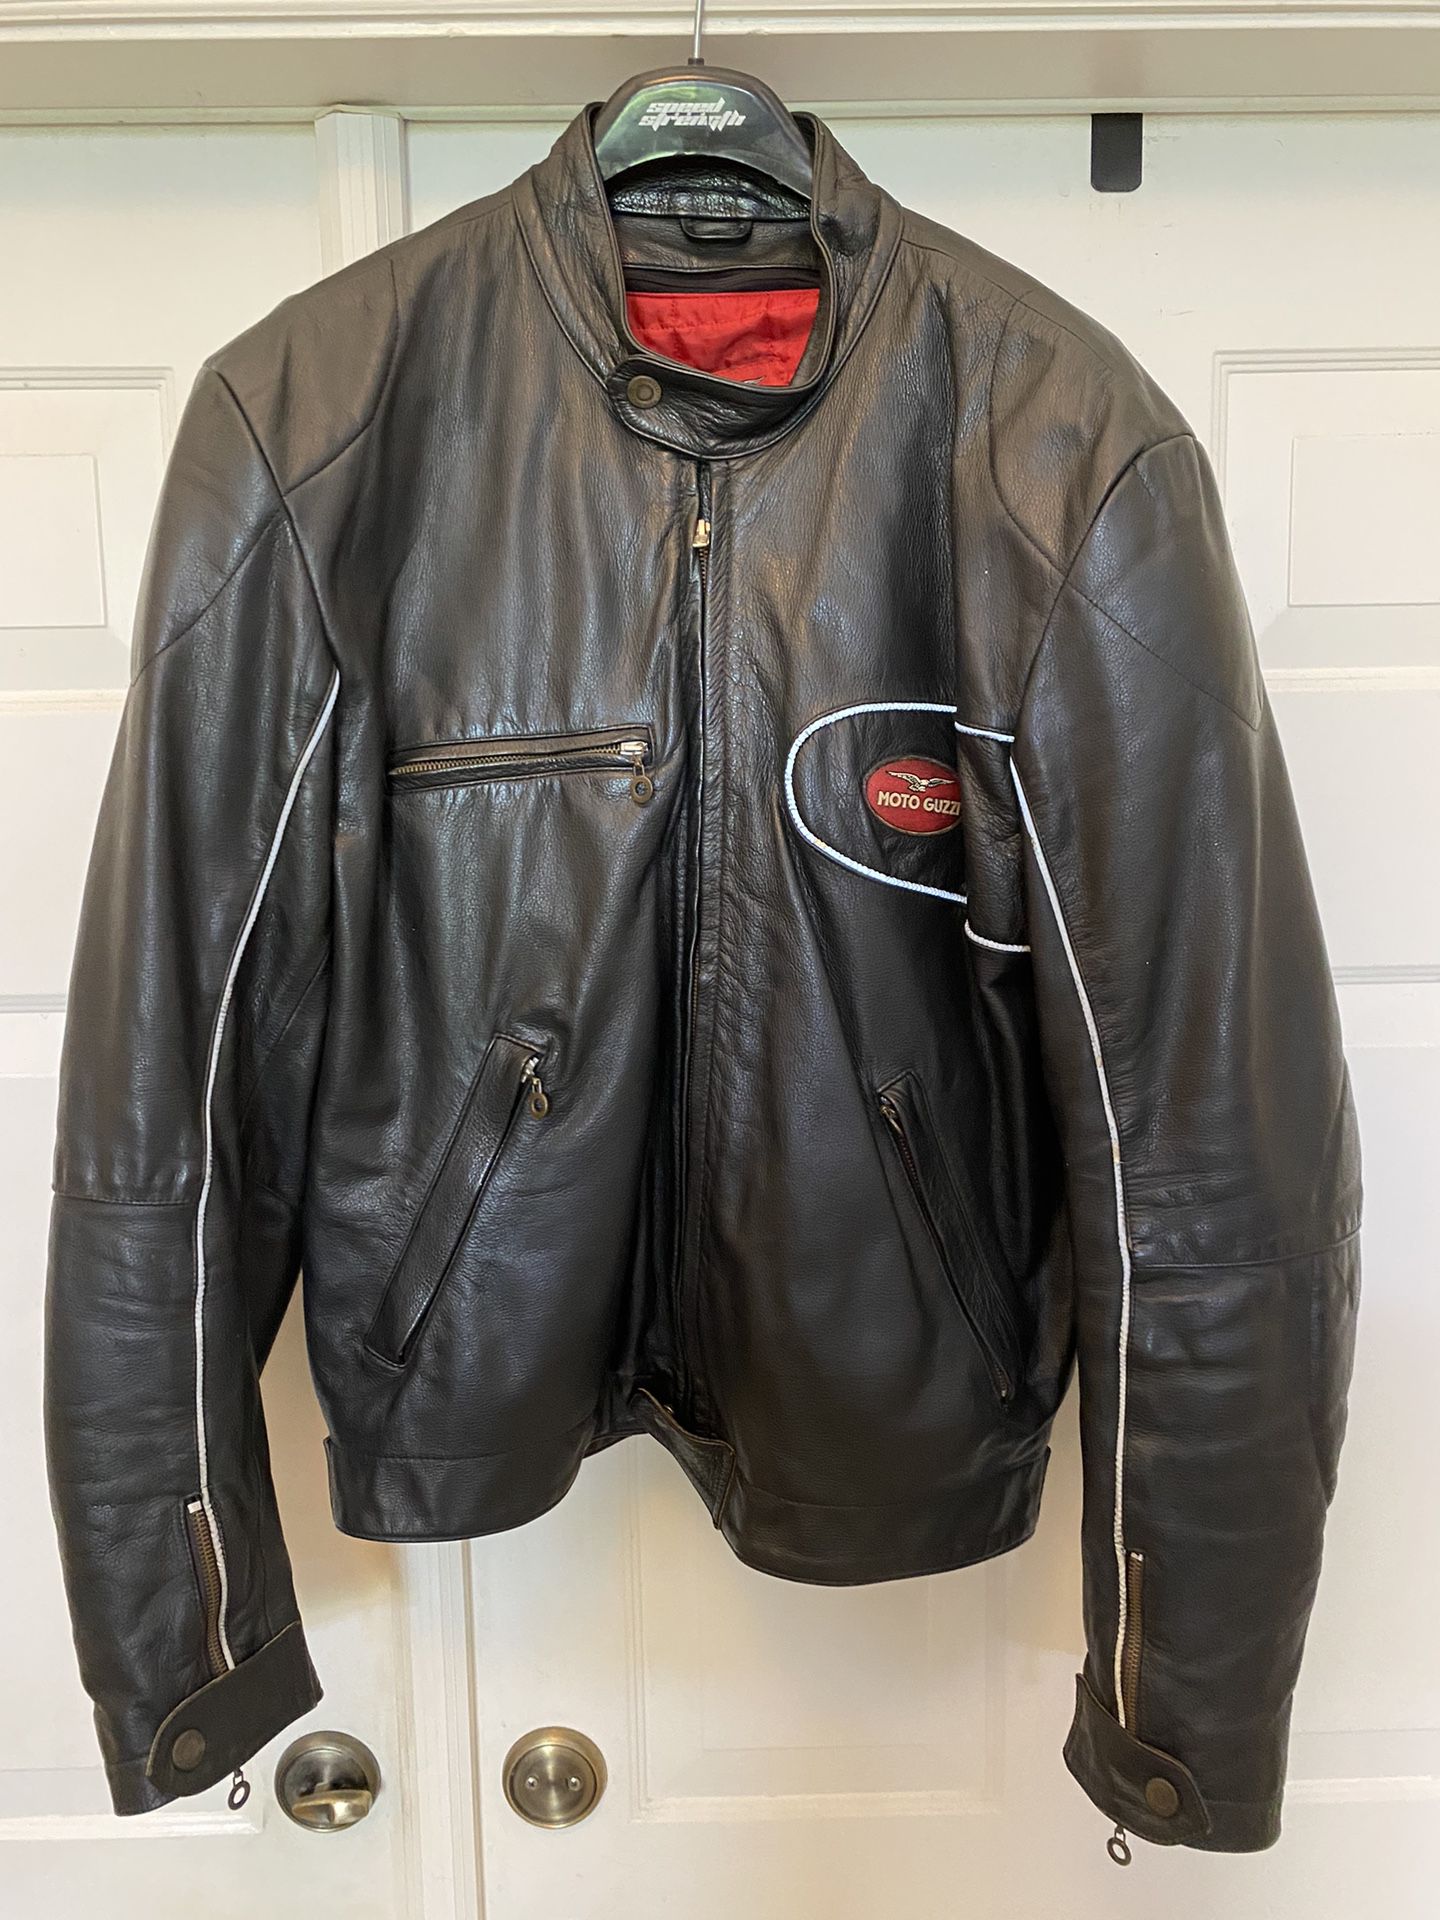 Moto Guzzi Leather Jacket